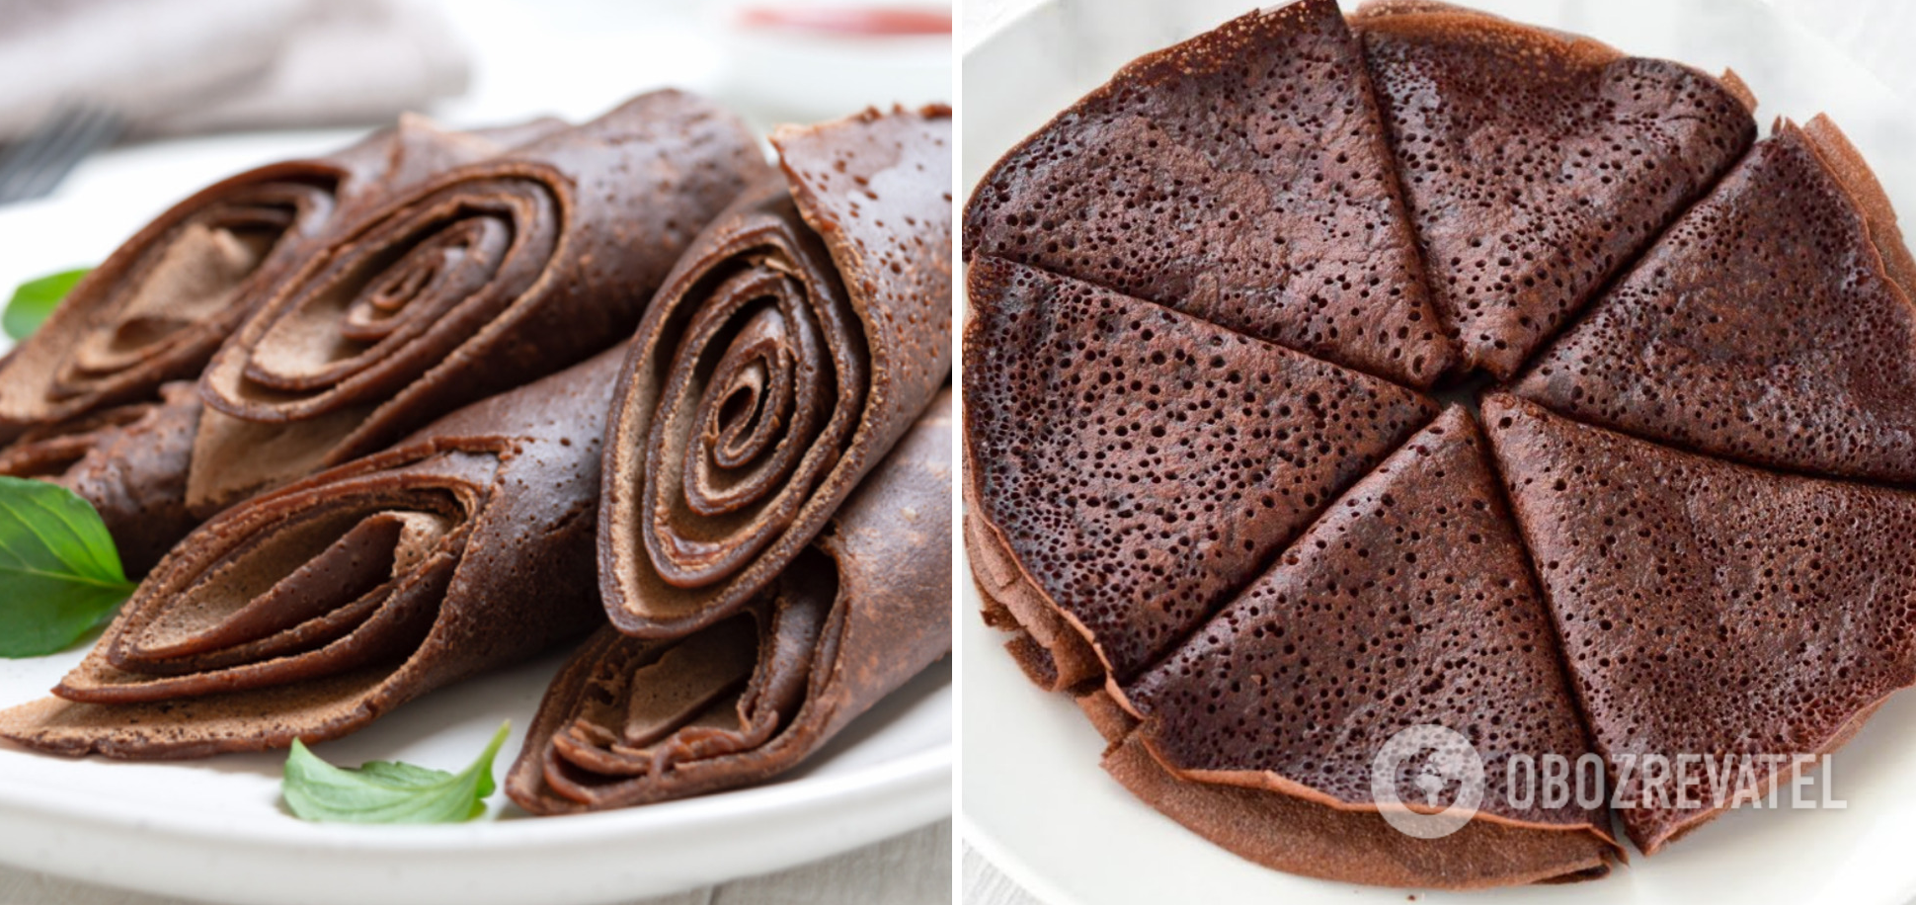 Chocolate pancakes with sugar-free milk